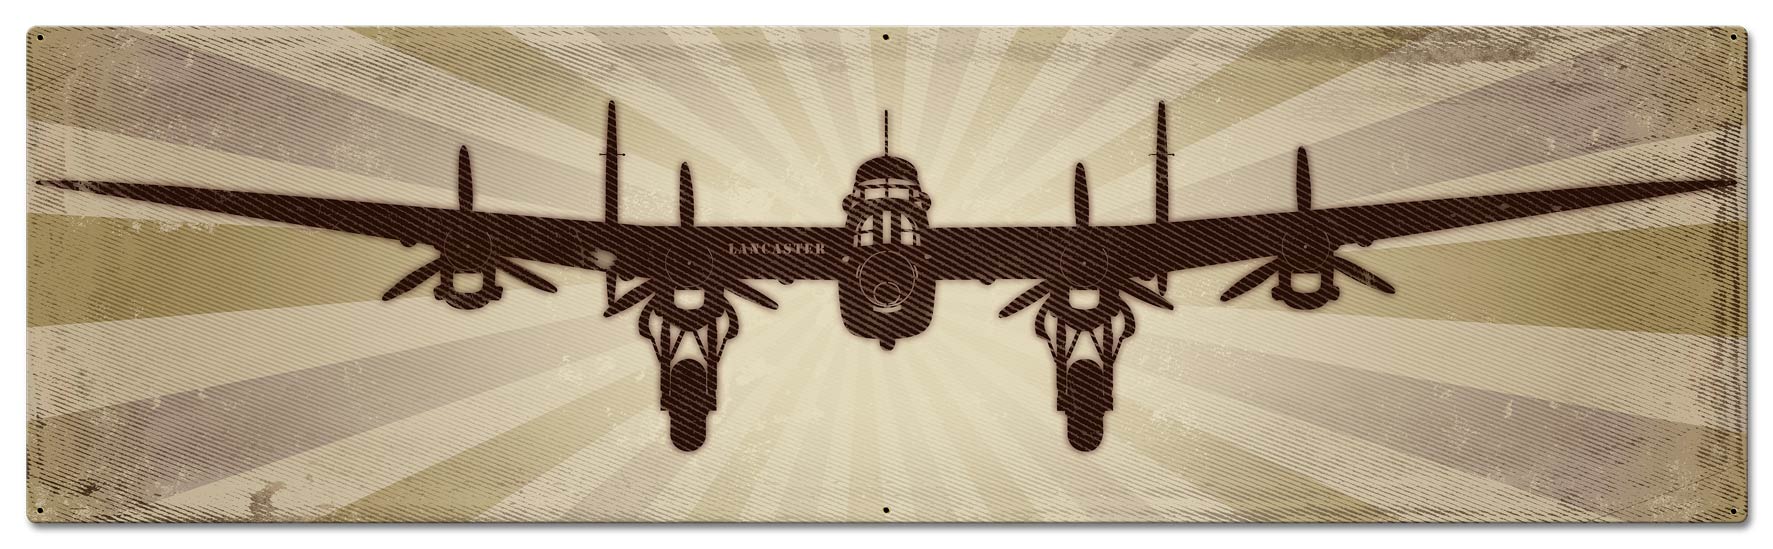 Planes Lancaster